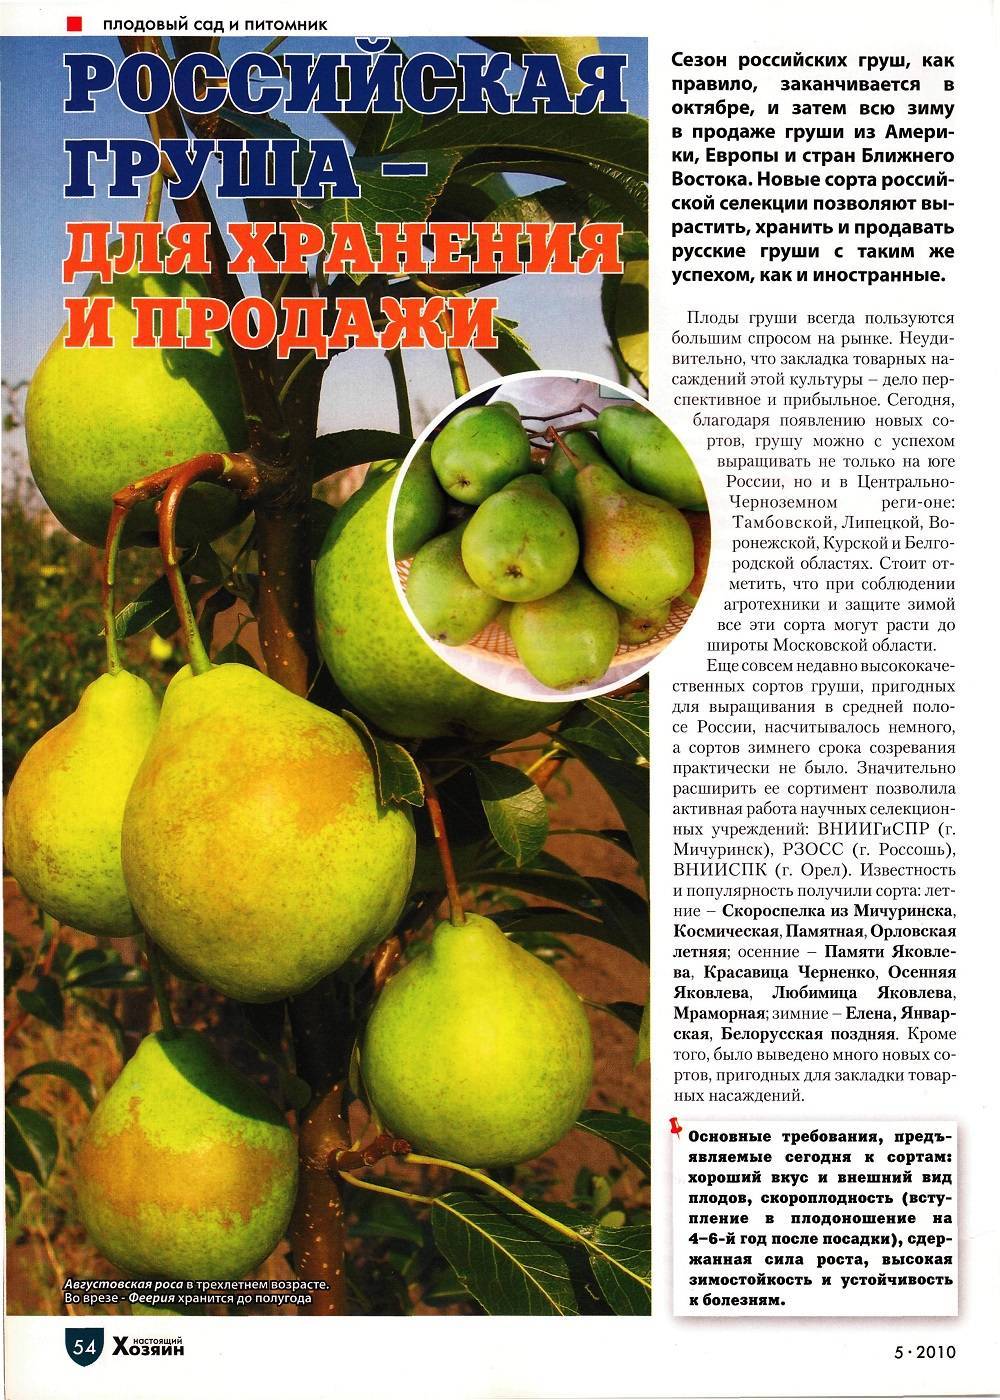 17 лучших сортов груш для Урала с описанием и тонкости выращивания